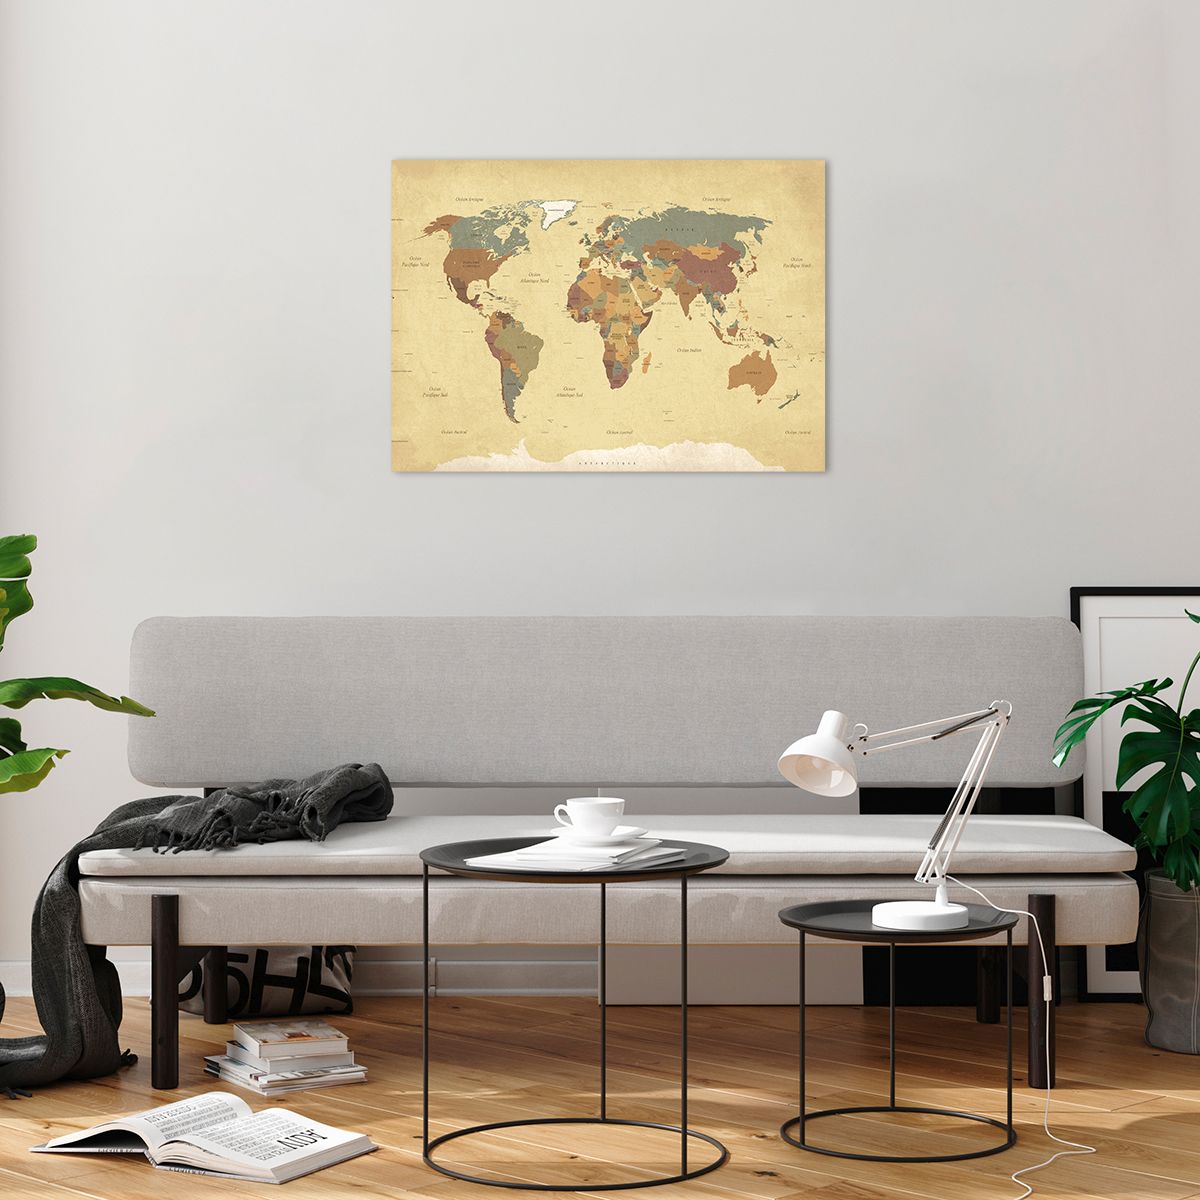 Bilder auf glas Weltkarte, Bilder auf glas Kontinente, Bilder auf glas Reisen, Bilder auf glas Grafik, Bilder auf glas Jahrgang